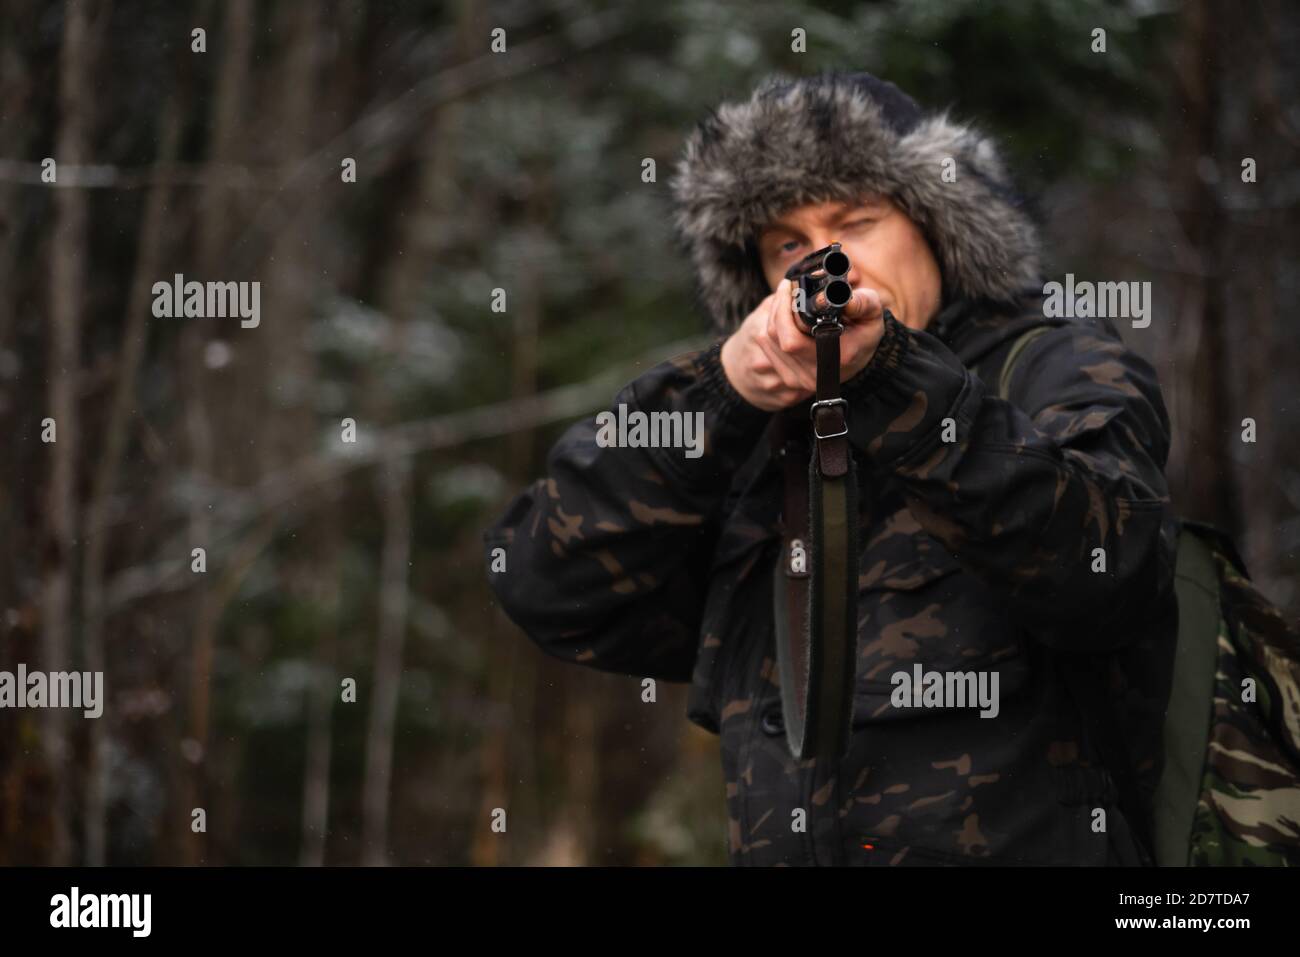 Chasseur visant un fusil de chasse dans une forêt d'hiver Banque D'Images